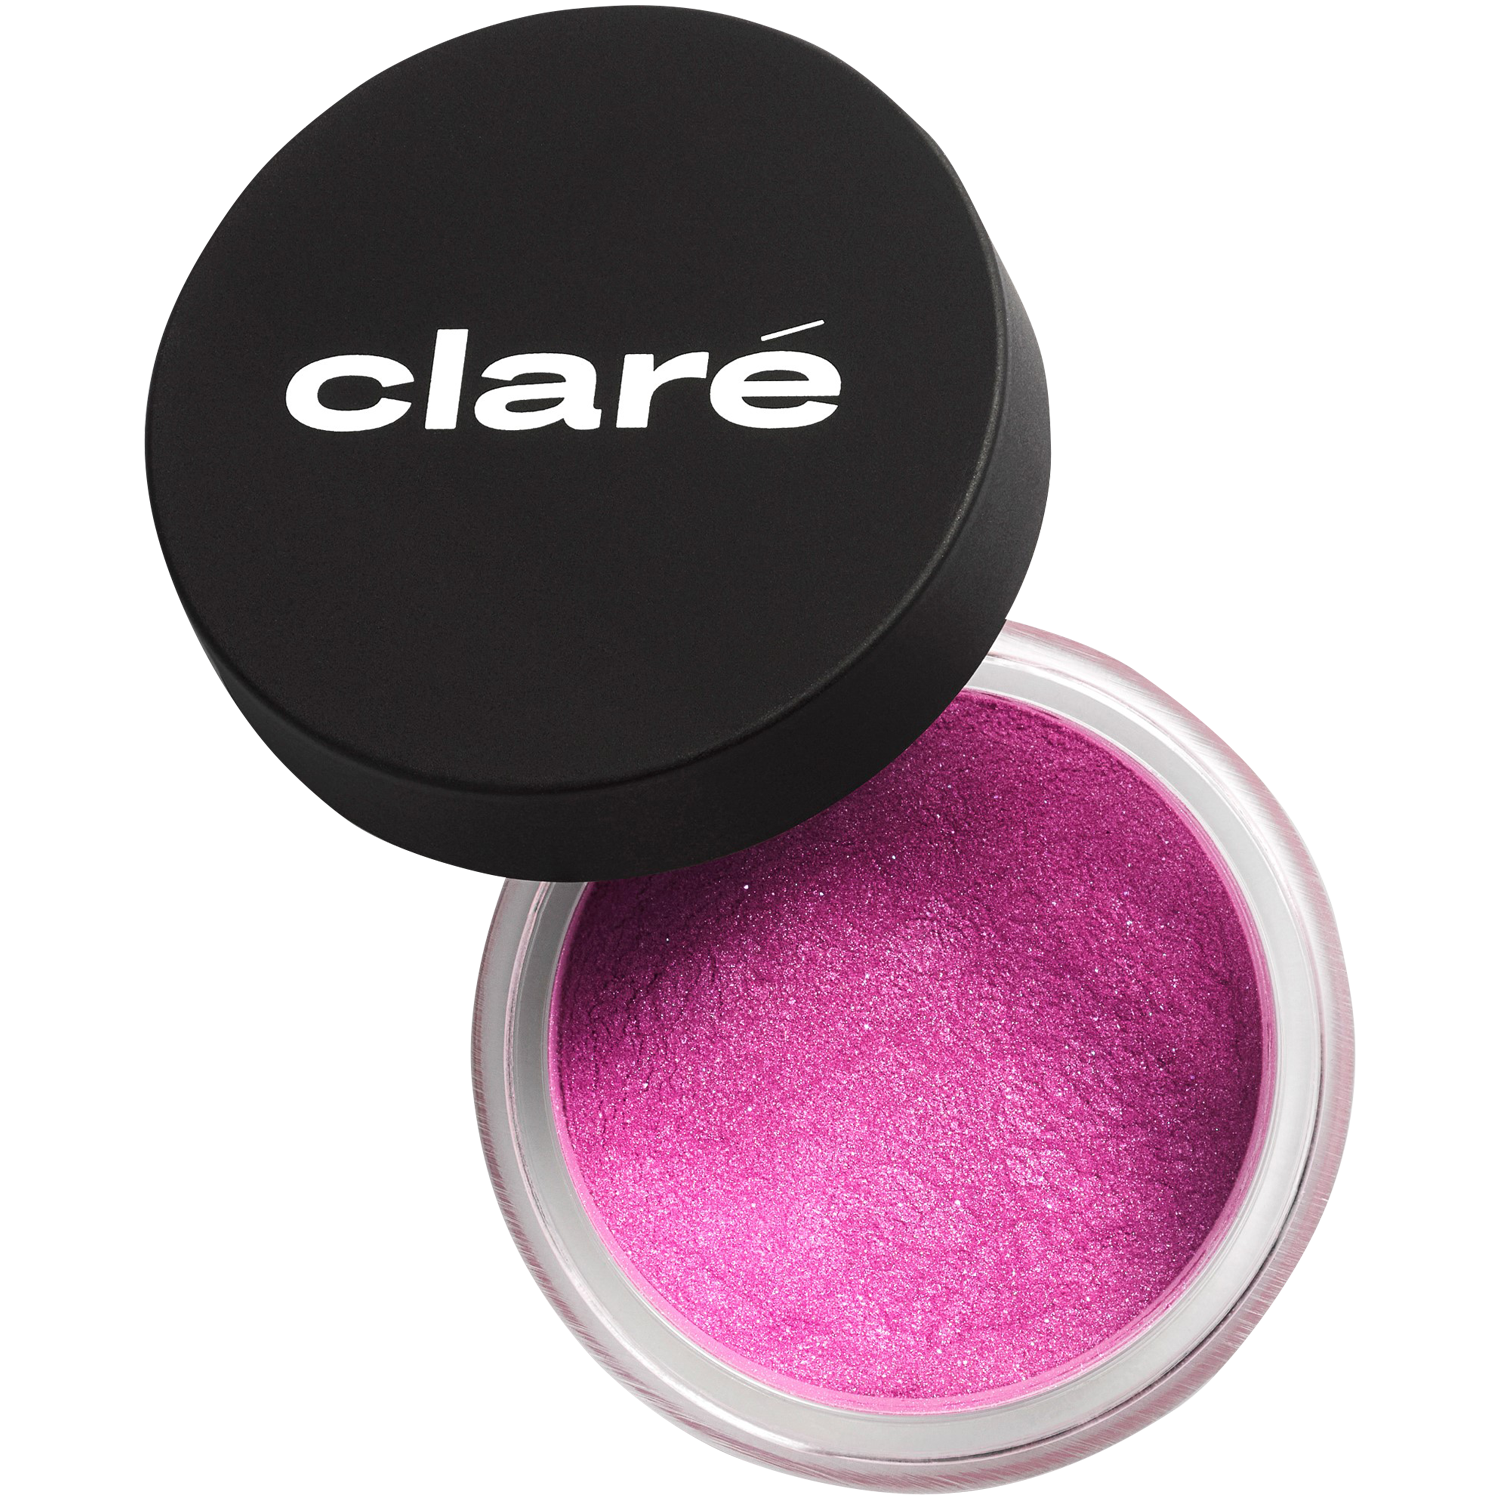 Атласные тени для век вереск 880 Claré Clare Makeup, 0,4 гр атласные тени для век холодного телесного цвета 900 claré clare makeup 1 гр